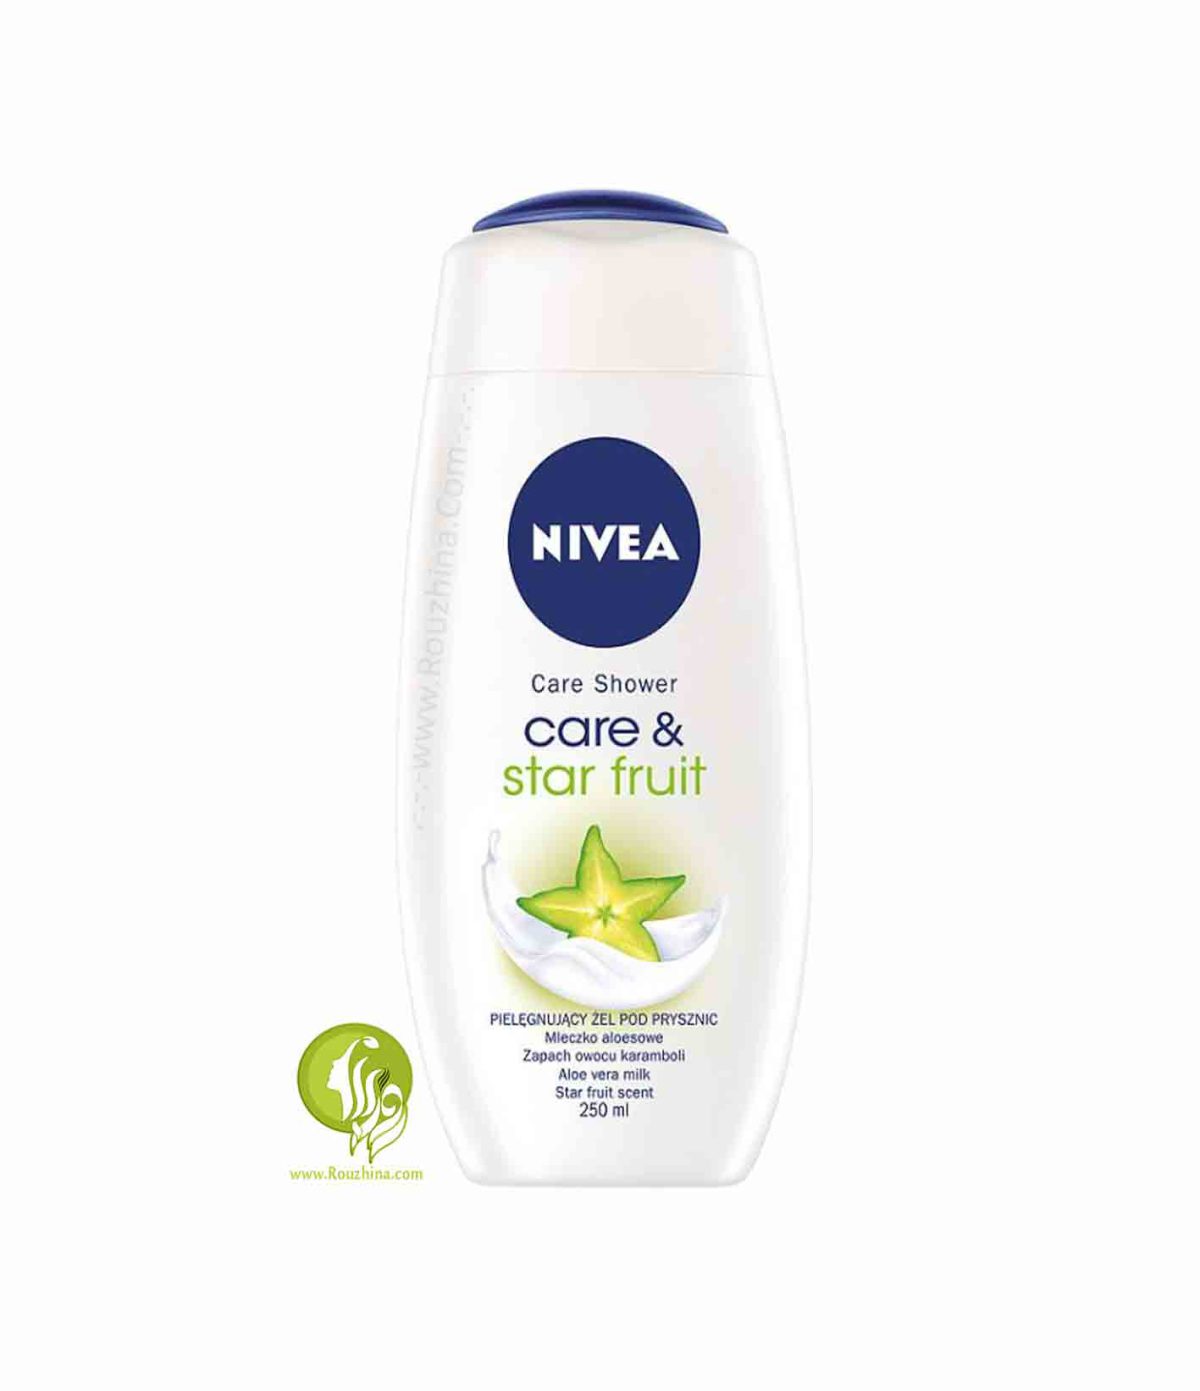 فروش ویژه کرم دوش میوه ای بدن نیوا Nivea مدل استار فروت Nivea Care & Star Fruit Body Shampoo